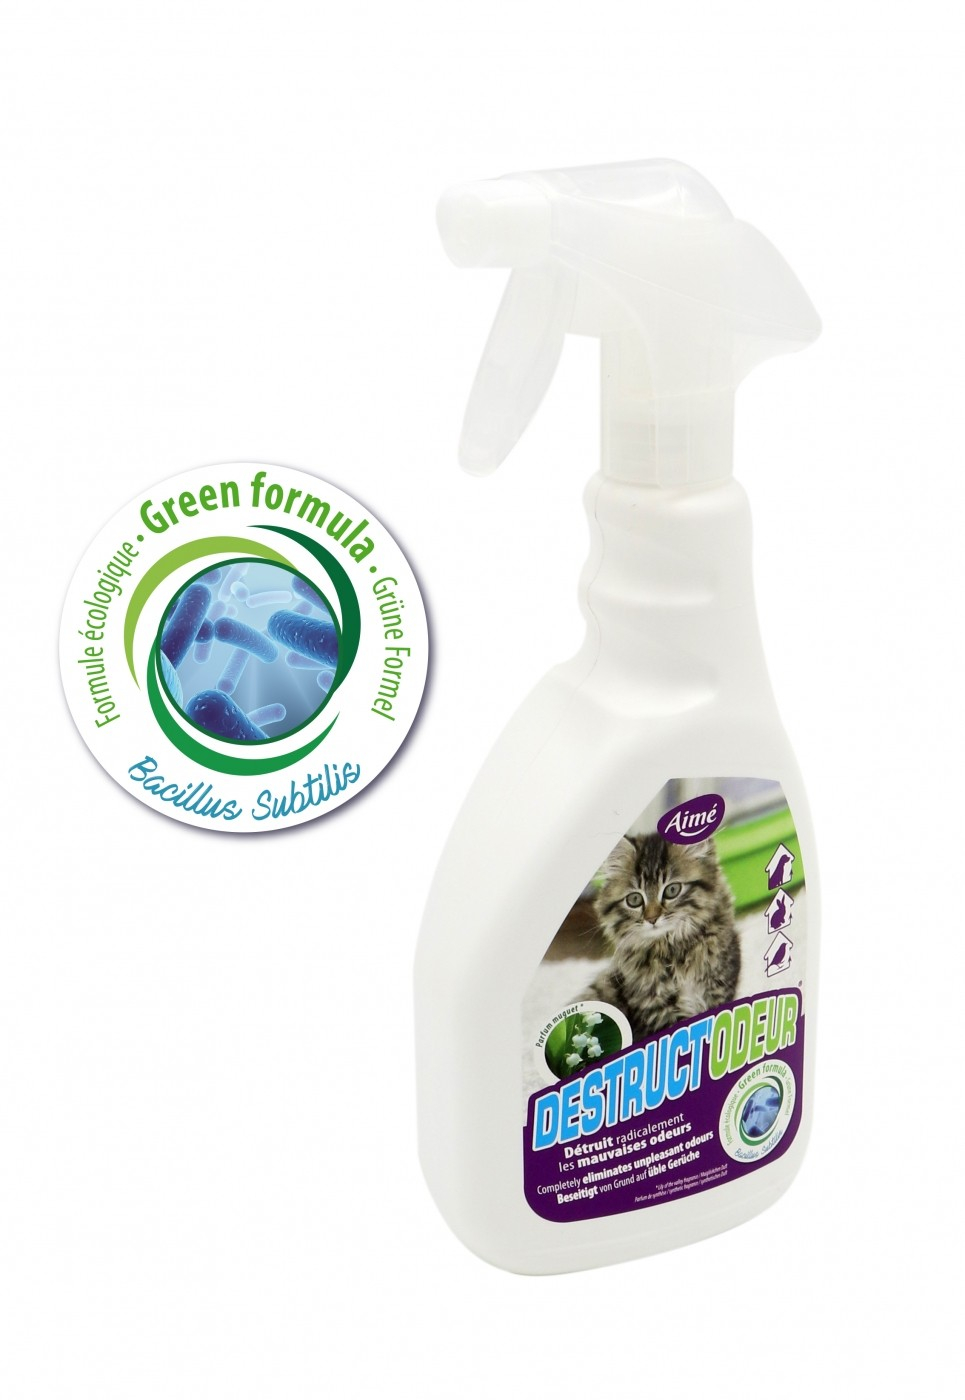 Espray antiolores arena olor muguet para gato o roedor